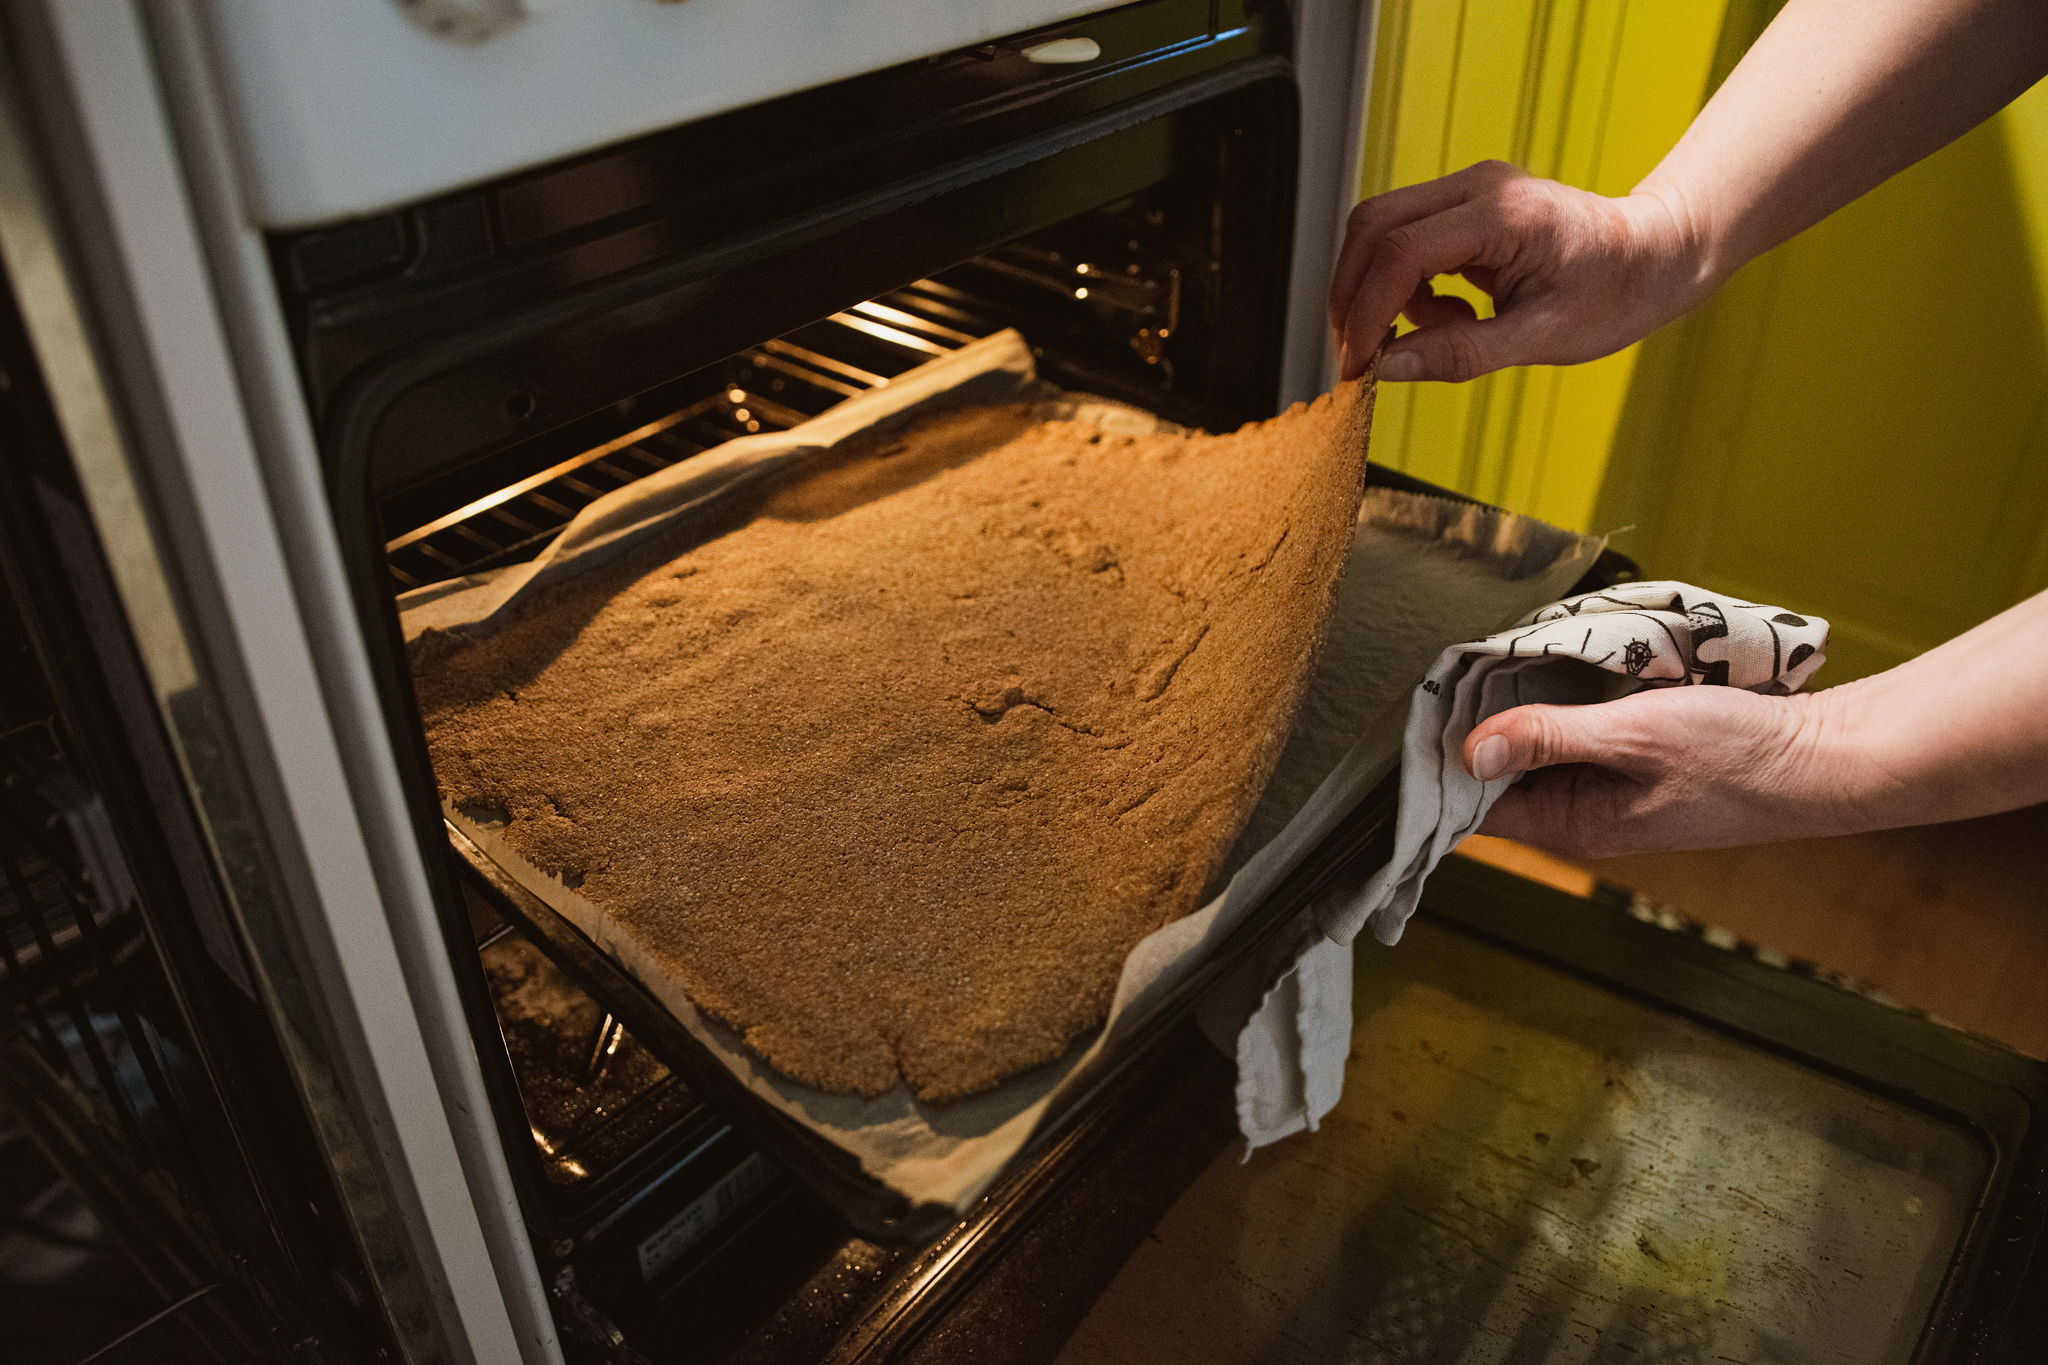 Baking simple recipe of Finnish rye cracker, "Näkkäri", in the oven